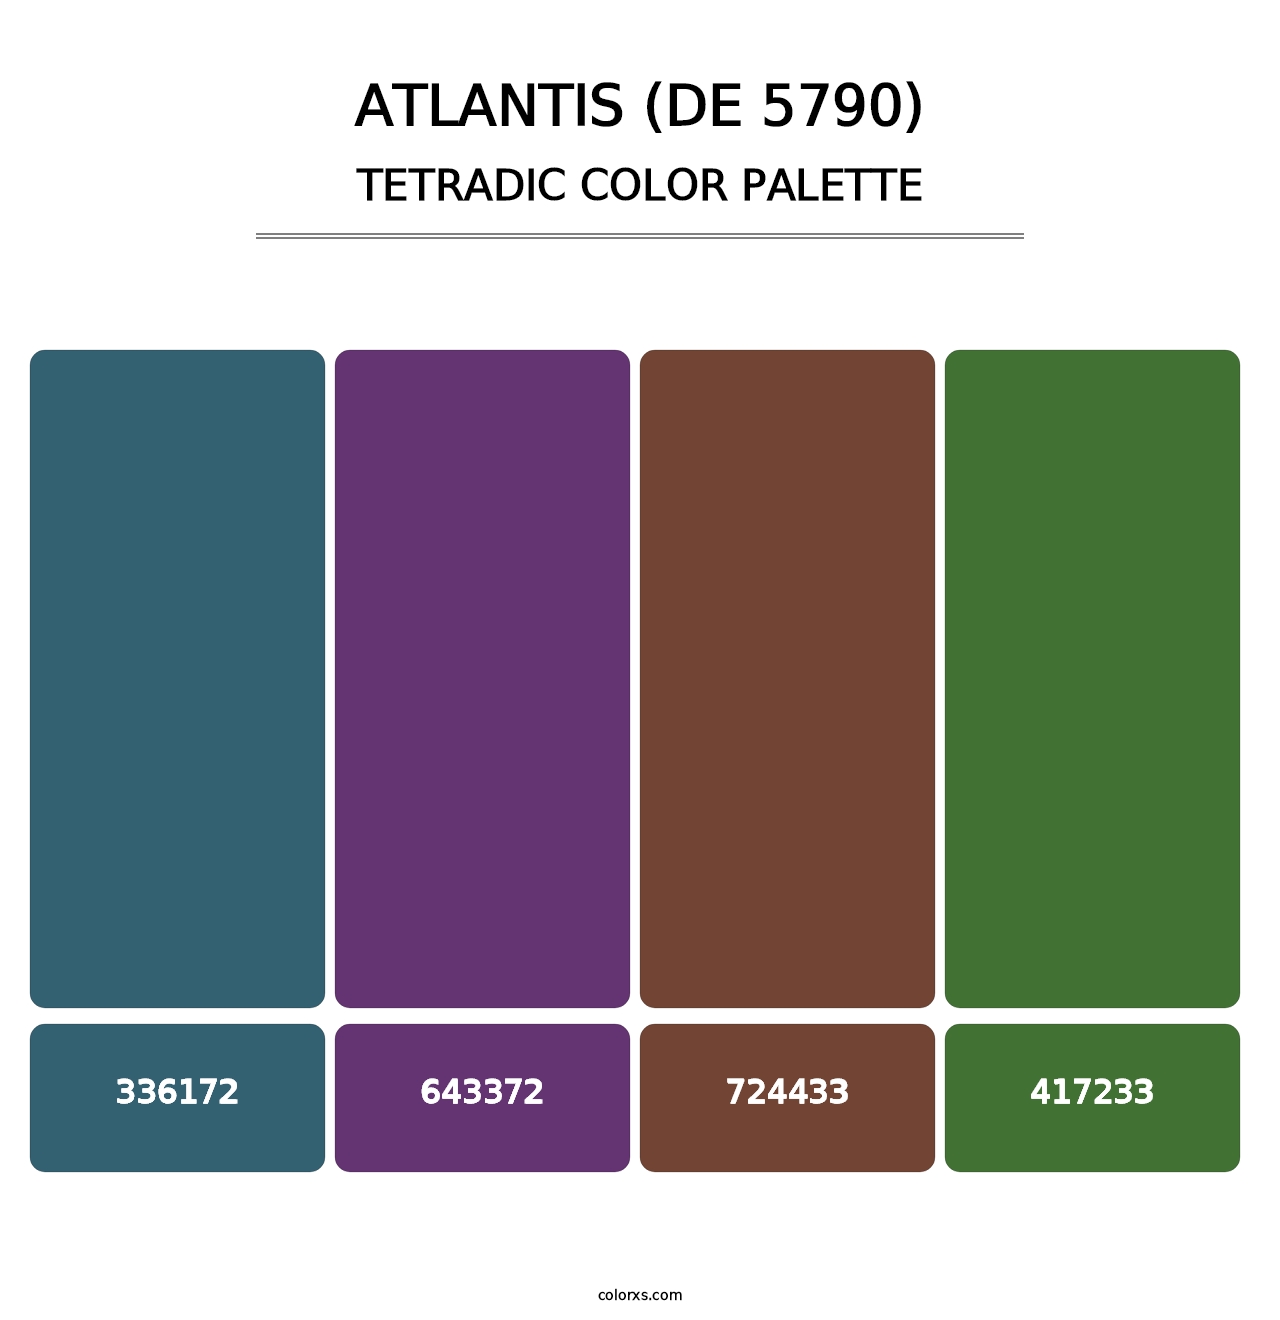 Atlantis (DE 5790) - Tetradic Color Palette